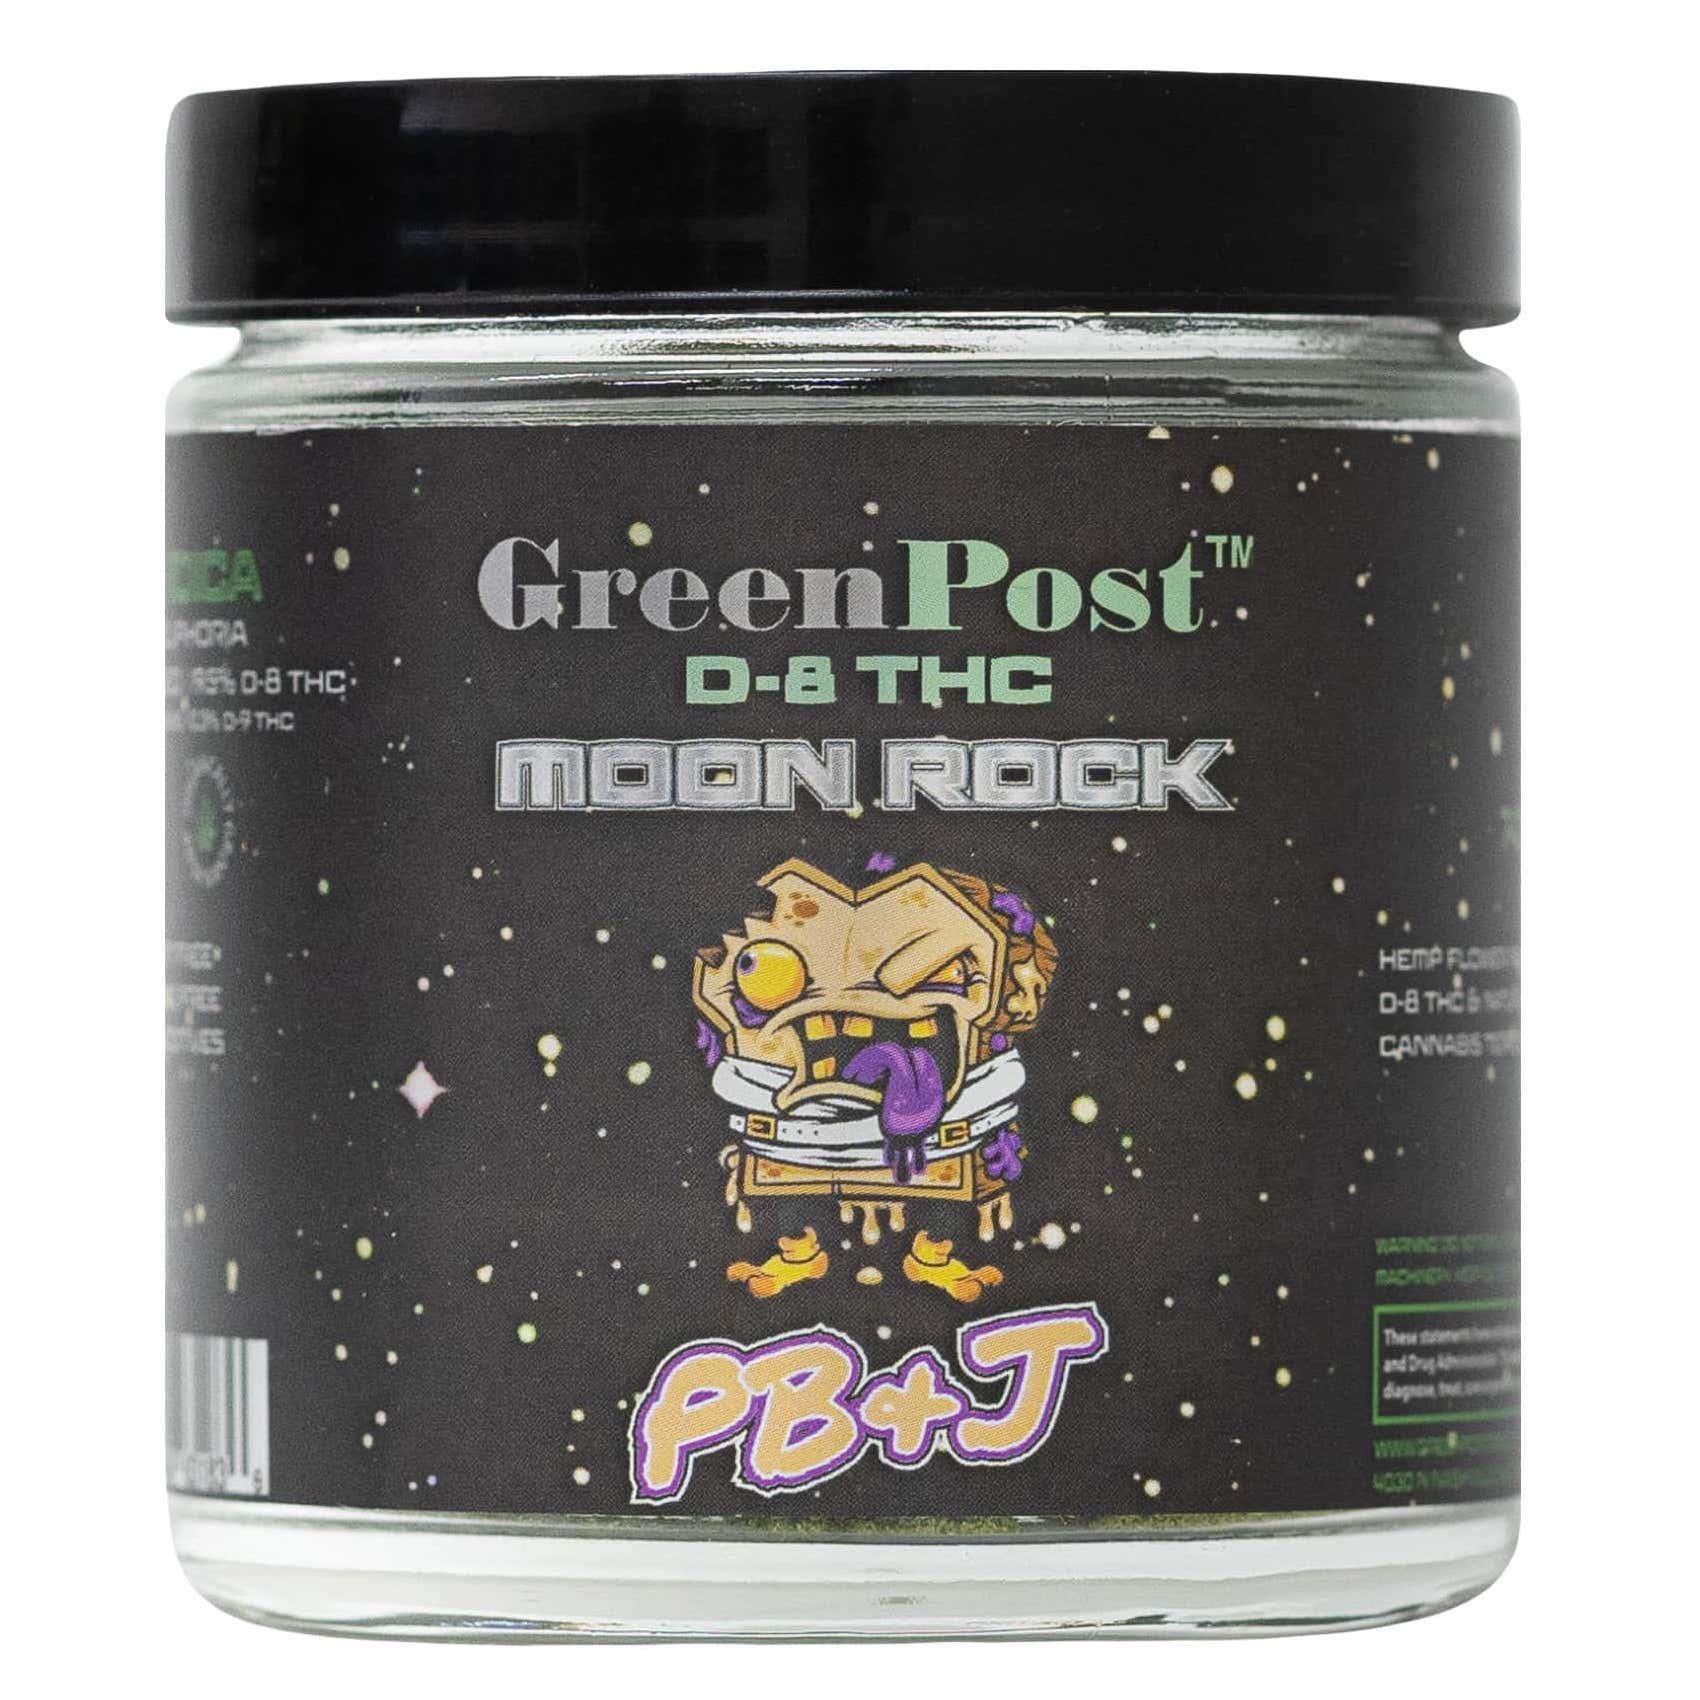 Delta 8 THC PB&J Moon Rocks - GreenPost CBD - www.GreenPostCBD.com